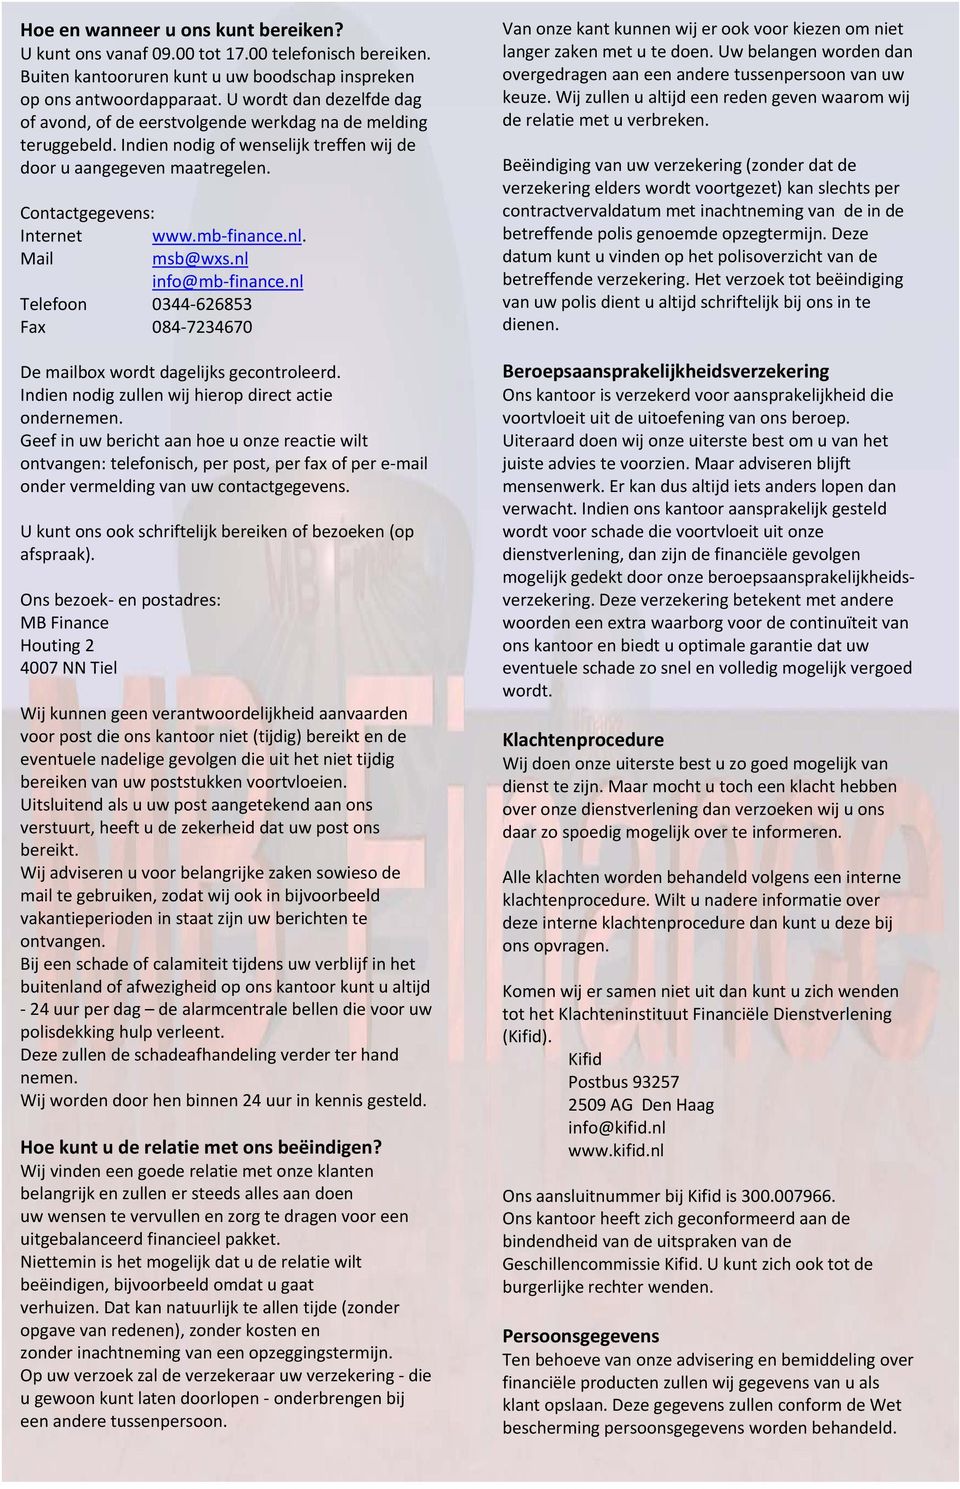 mb finance.nl. Mail msb@wxs.nl info@mb finance.nl Telefoon 0344 626853 Fax 084 7234670 De mailbox wordt dagelijks gecontroleerd. Indien nodig zullen wij hierop direct actie ondernemen.